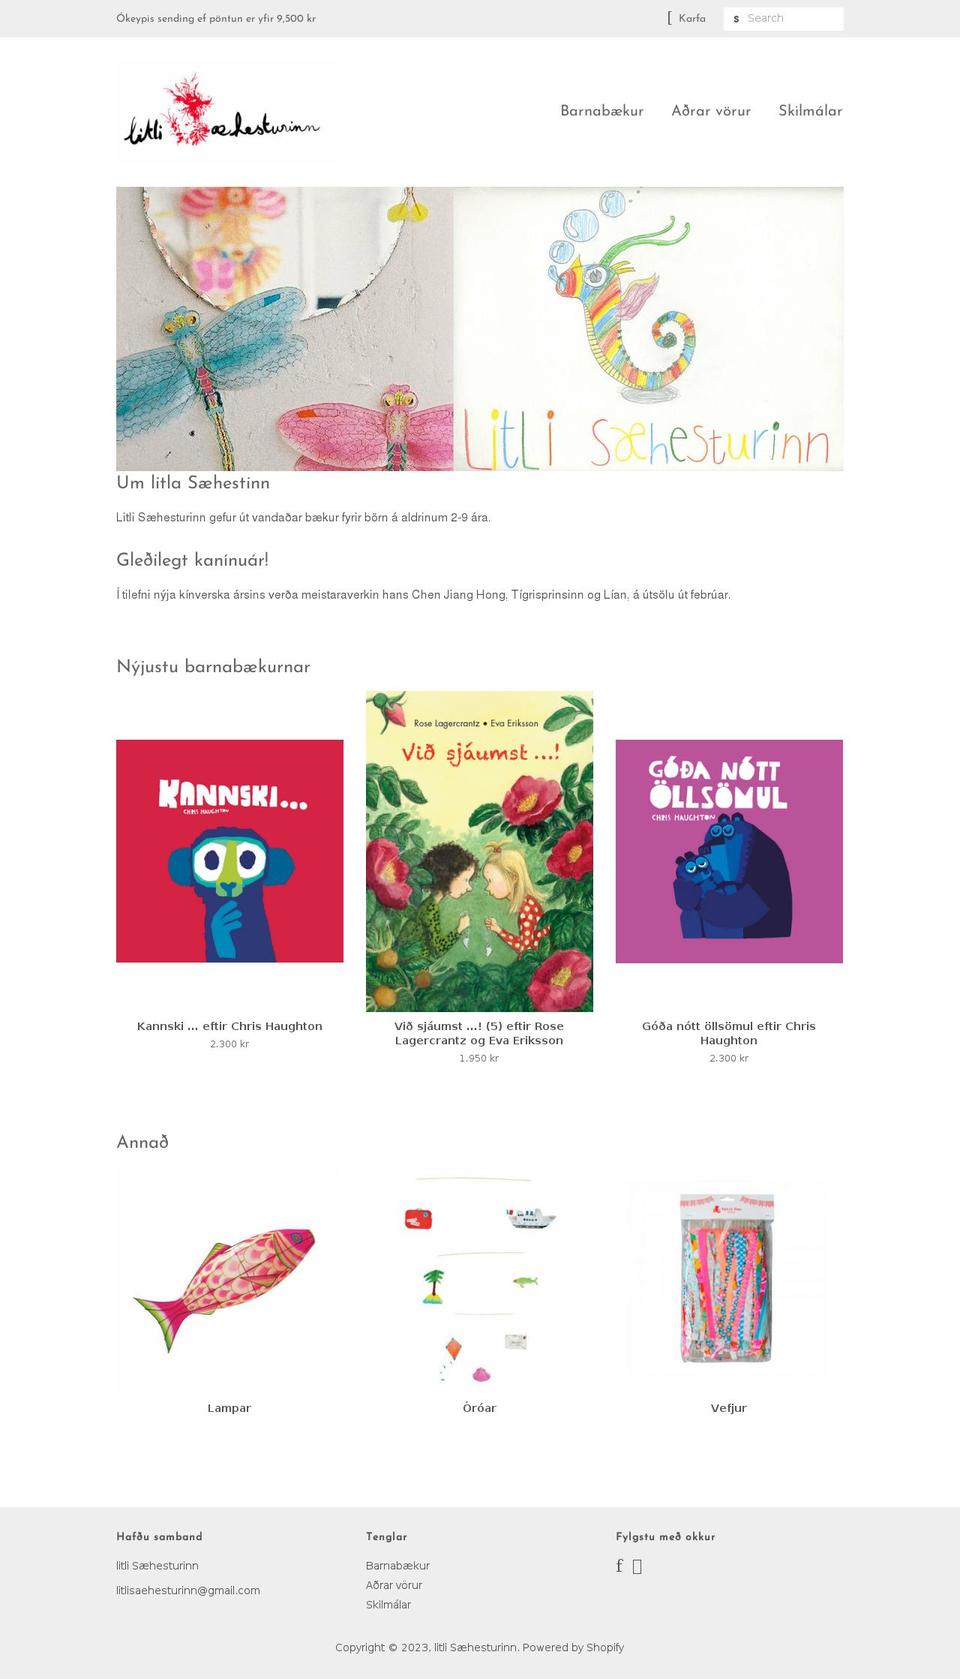 litlisaehesturinn.is shopify website screenshot